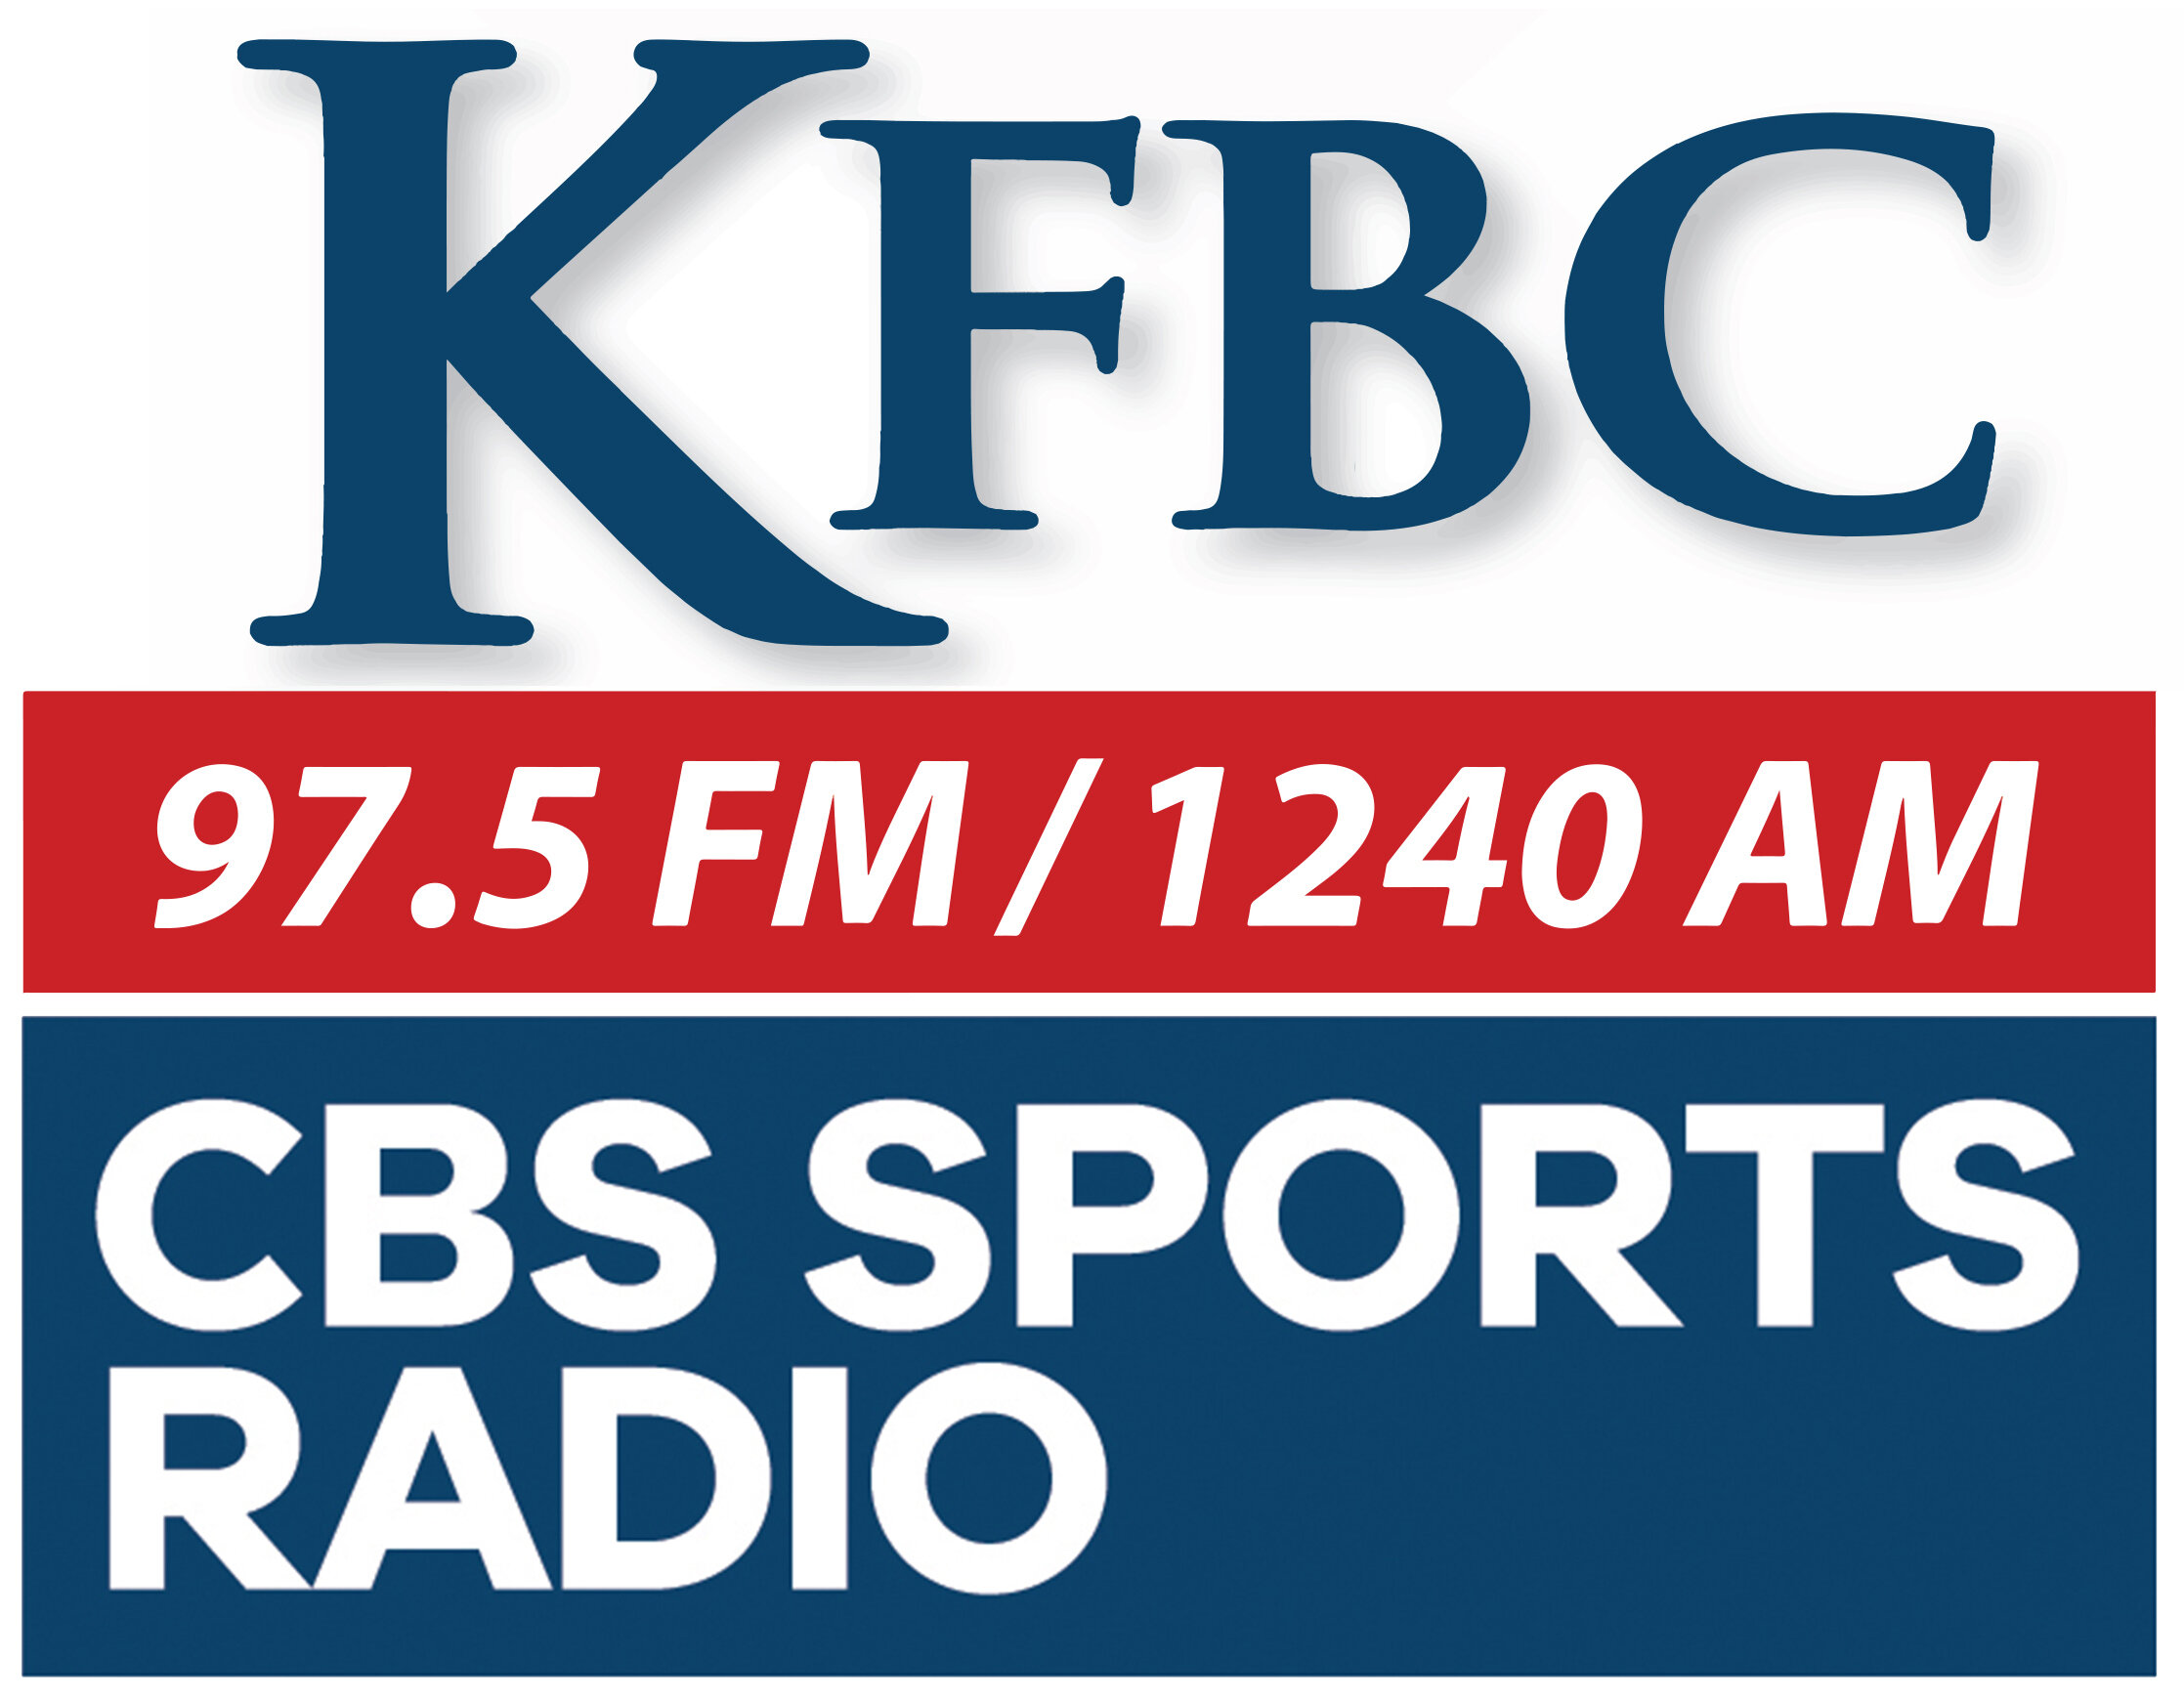 Cornrow-KFBC logo 2020.jpg